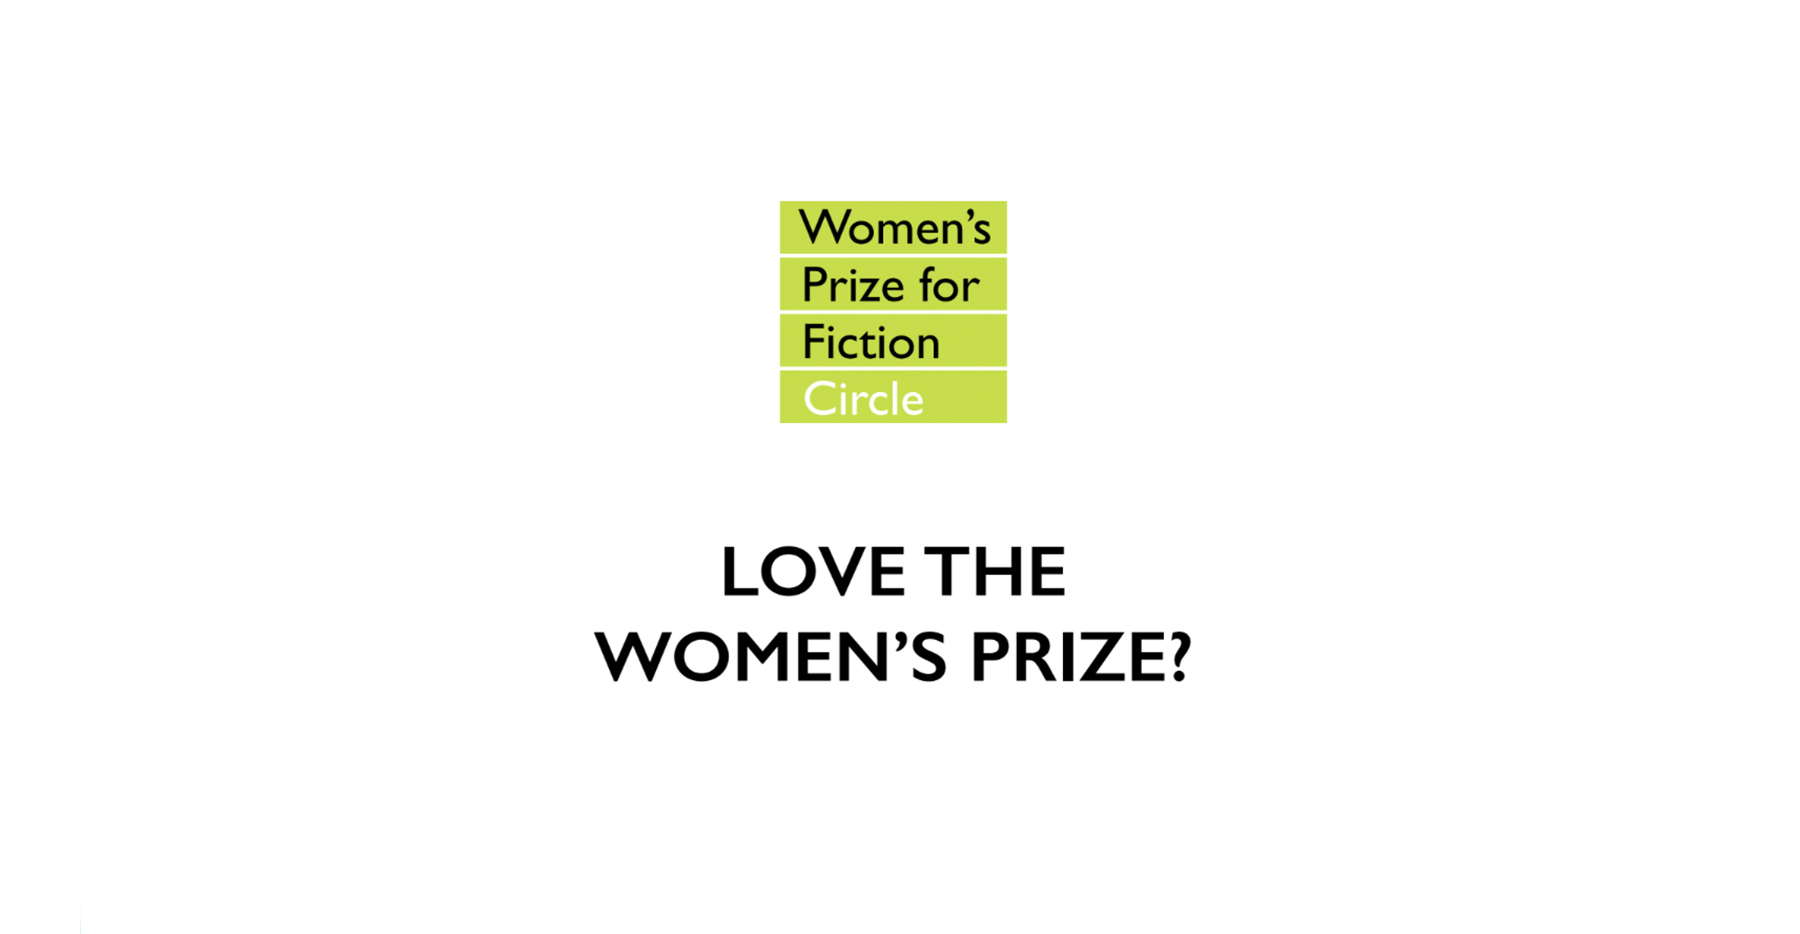 جائزة المرأة للرواية